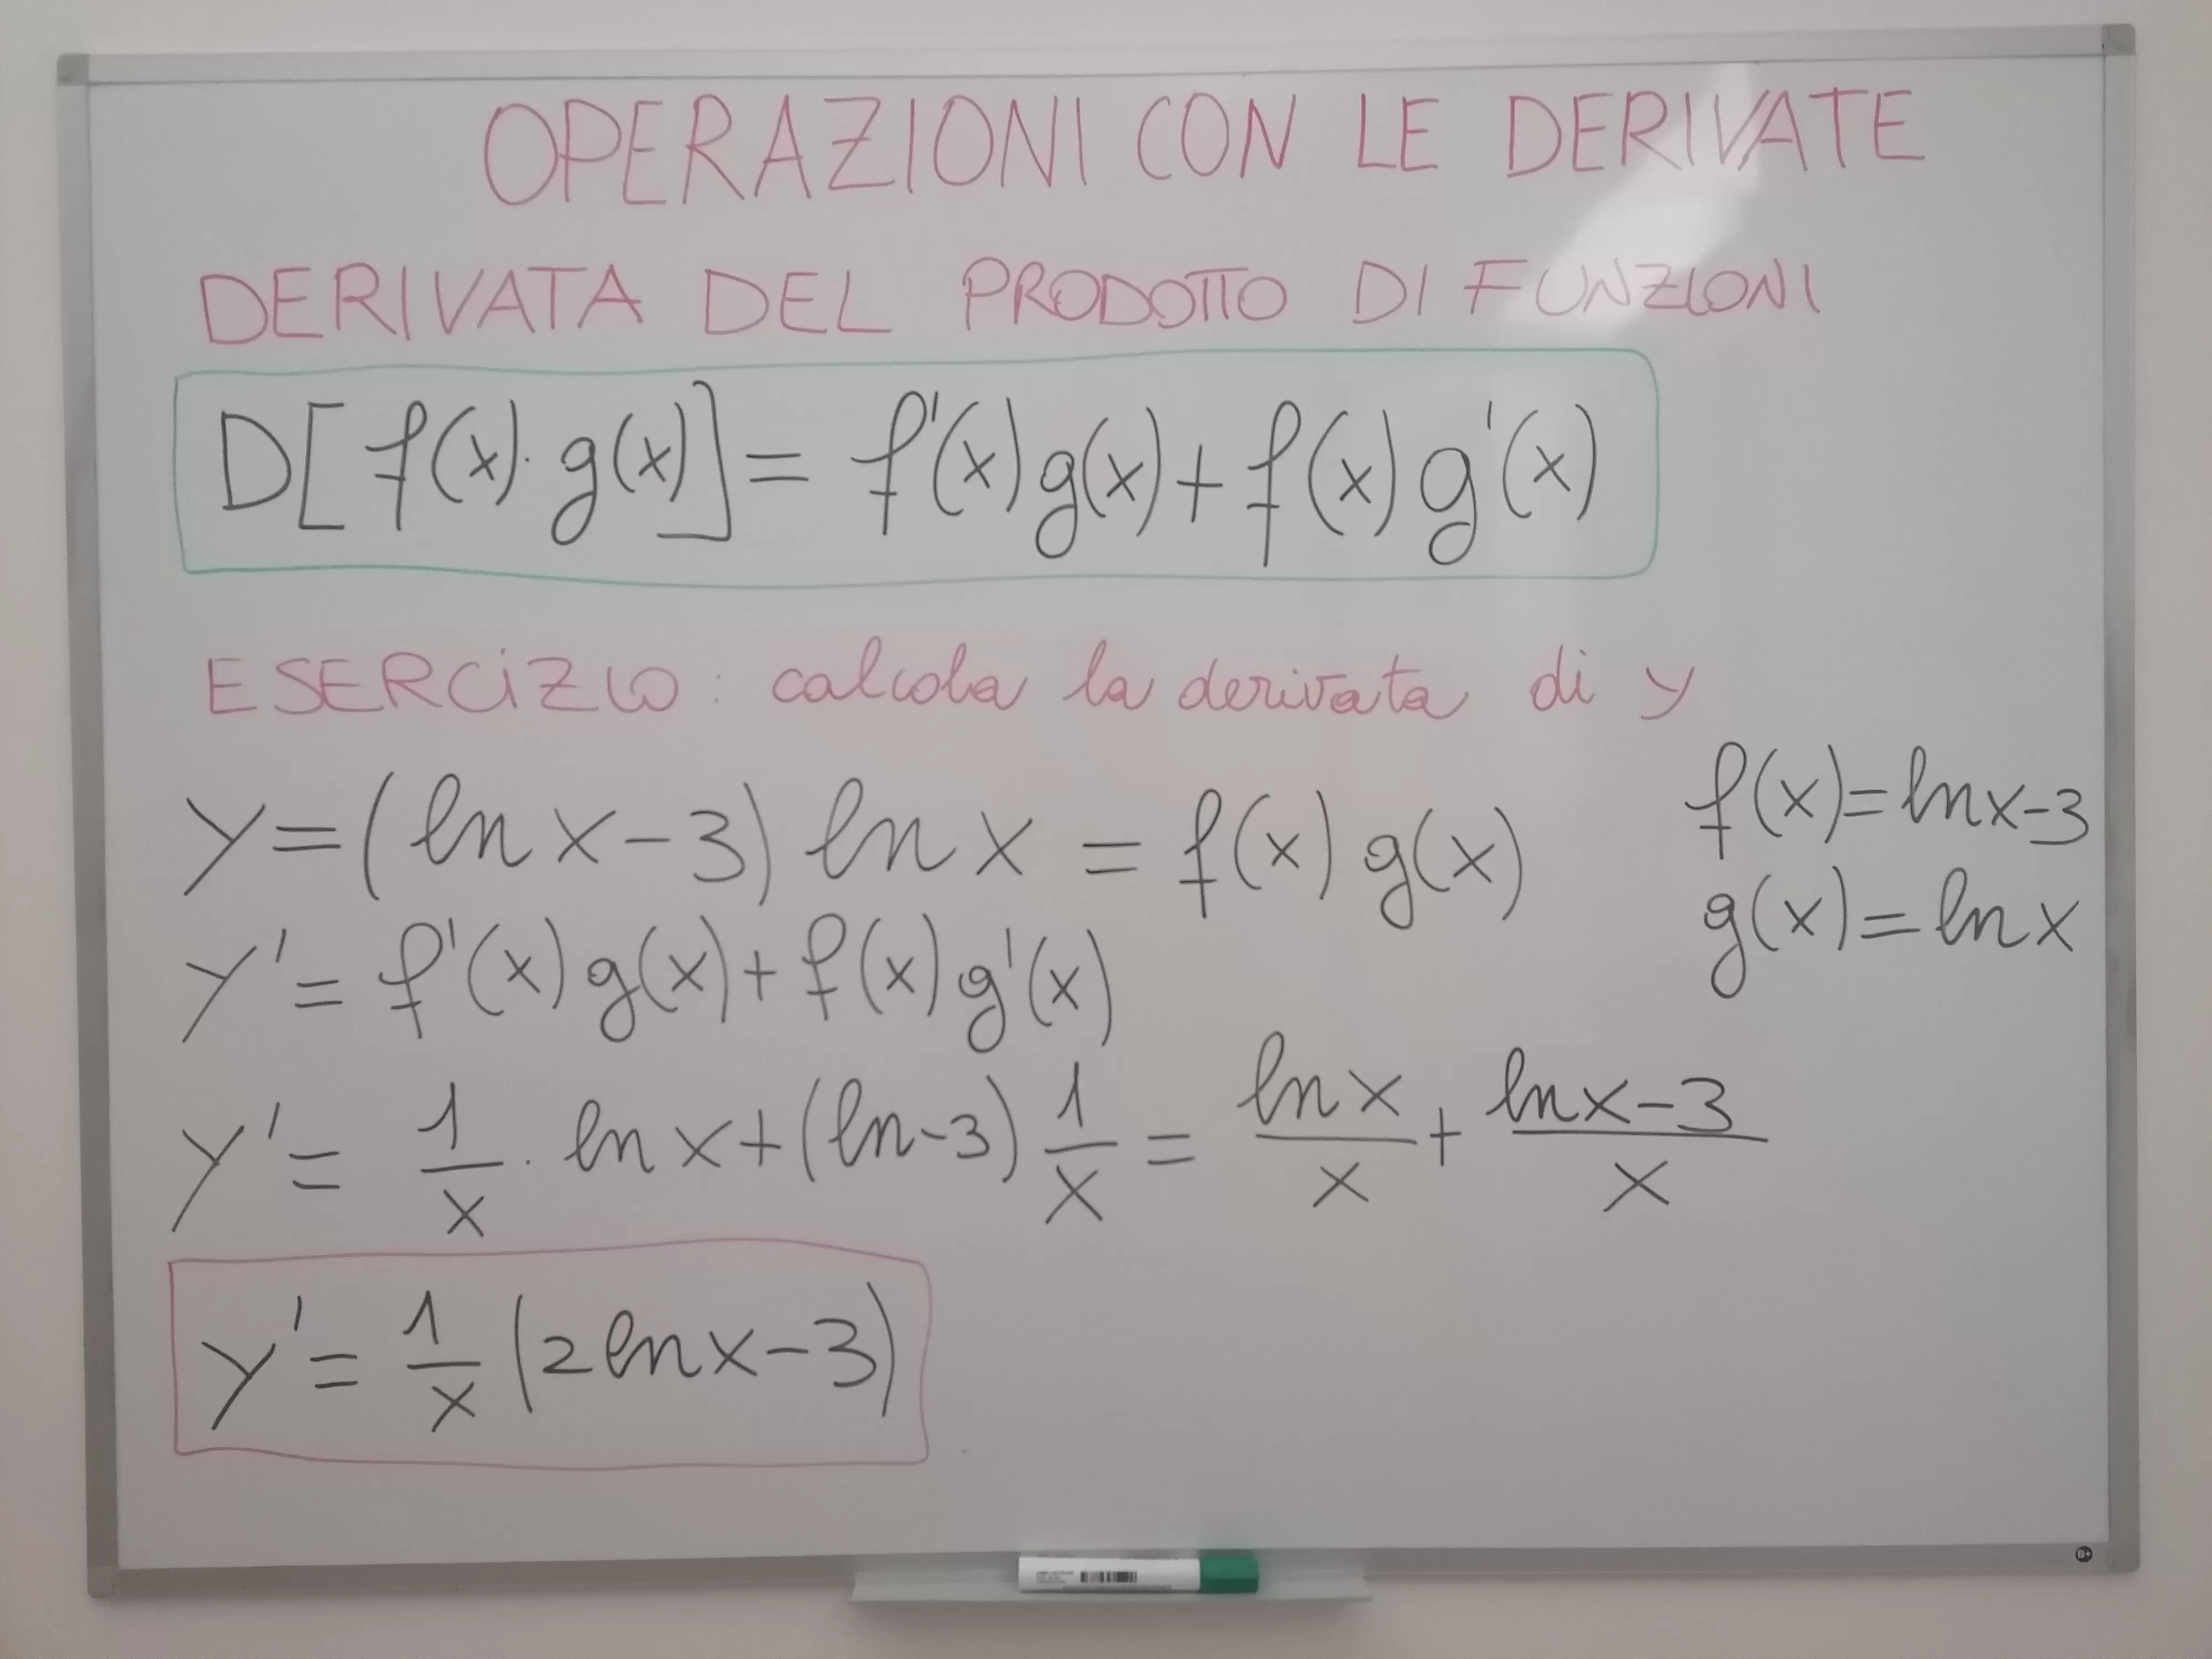 Derivata di y=(ln(x) - 3)ln(x)